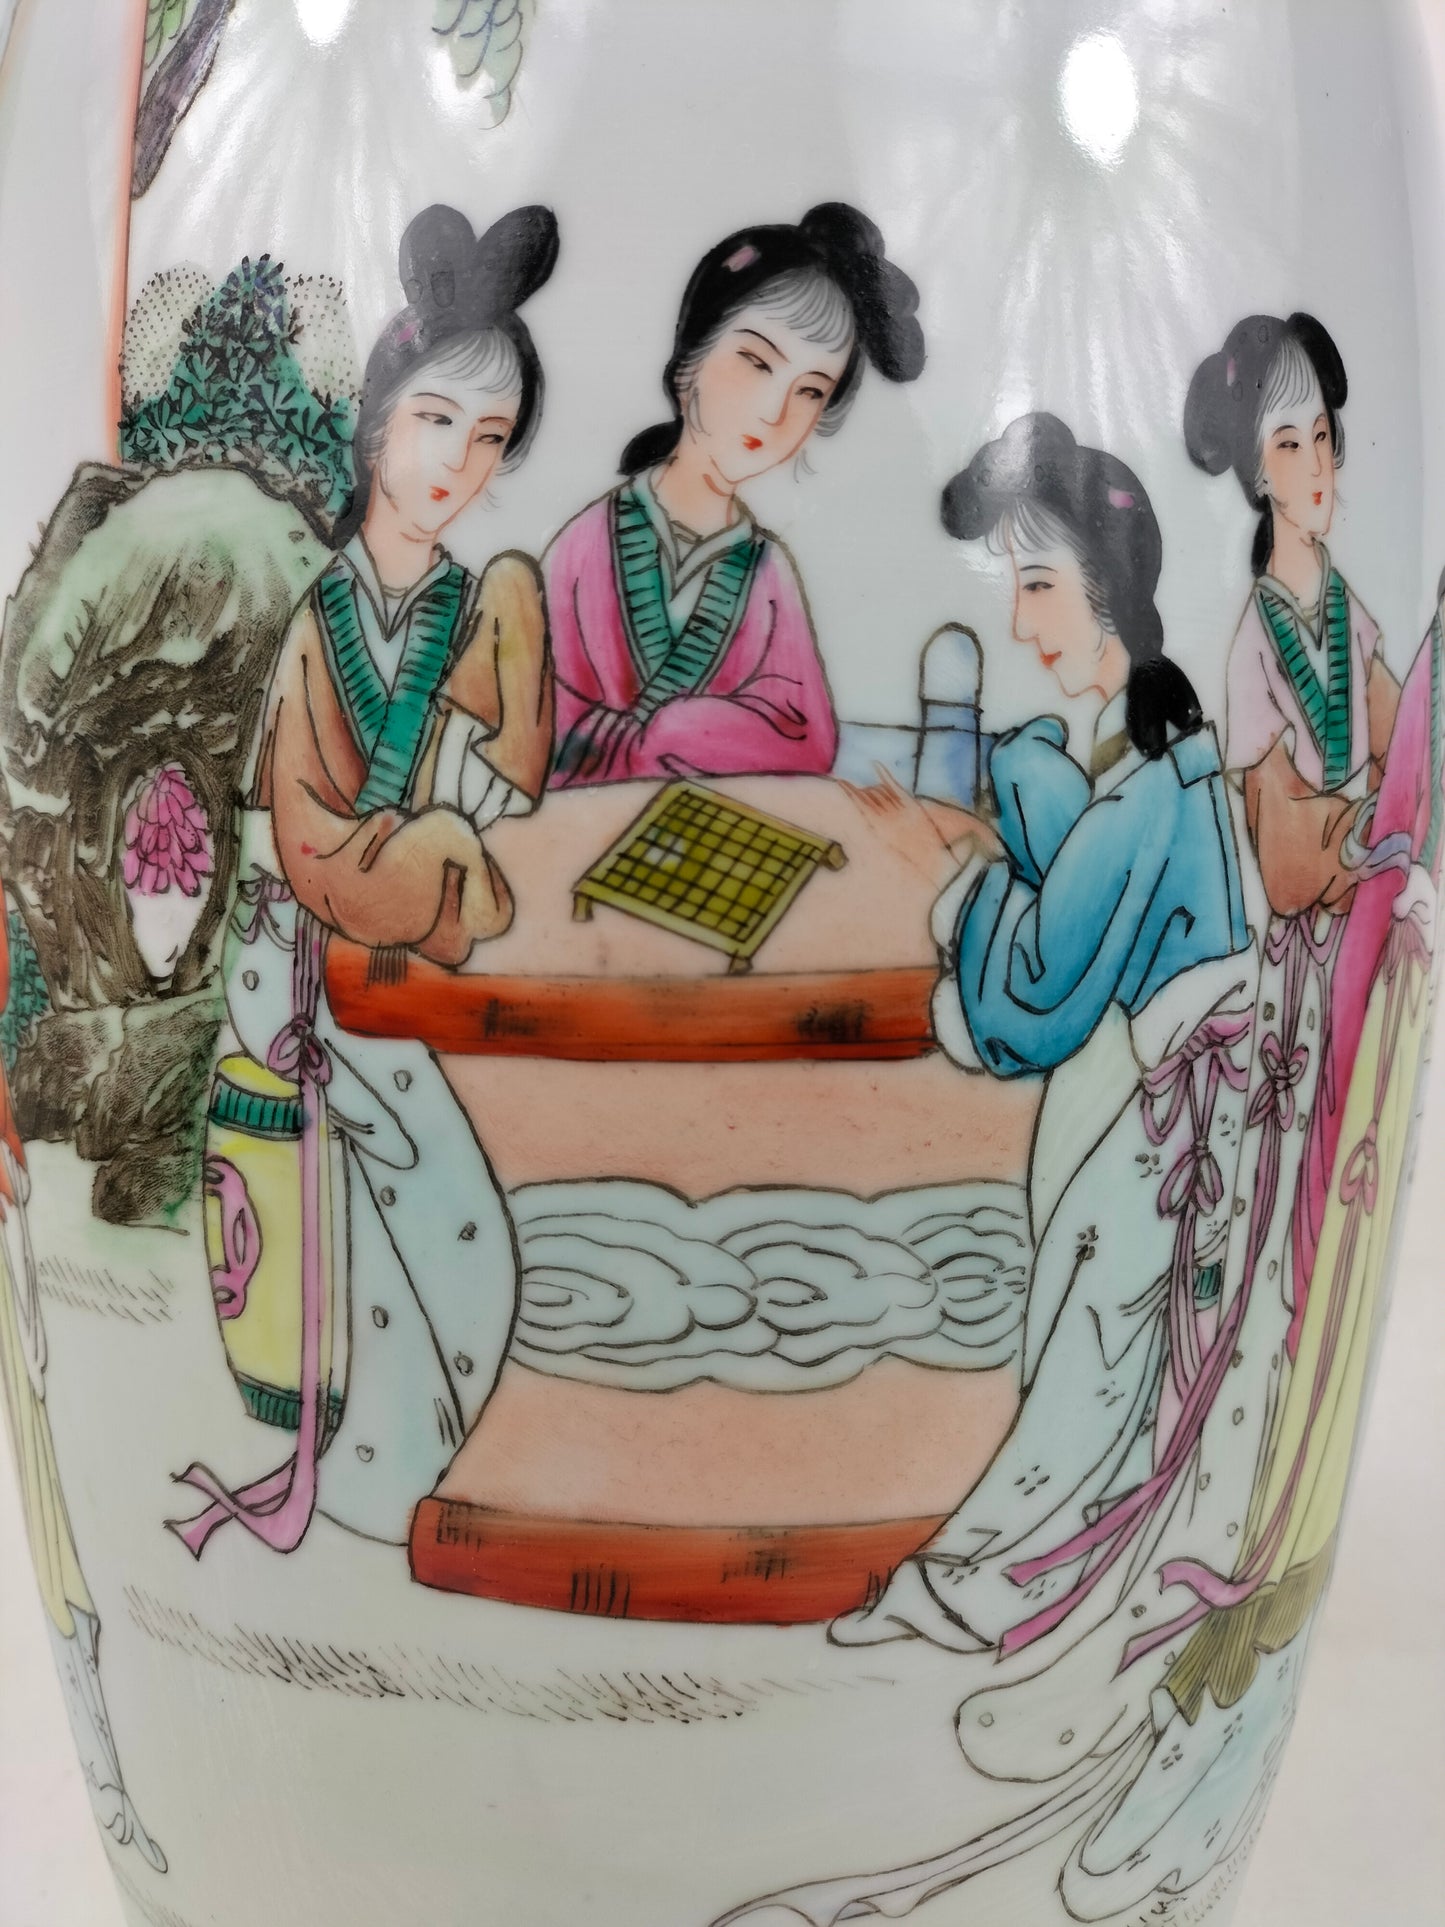 大型中国粉彩花瓶，装饰有园林景观 // 景德镇 - 20 世纪